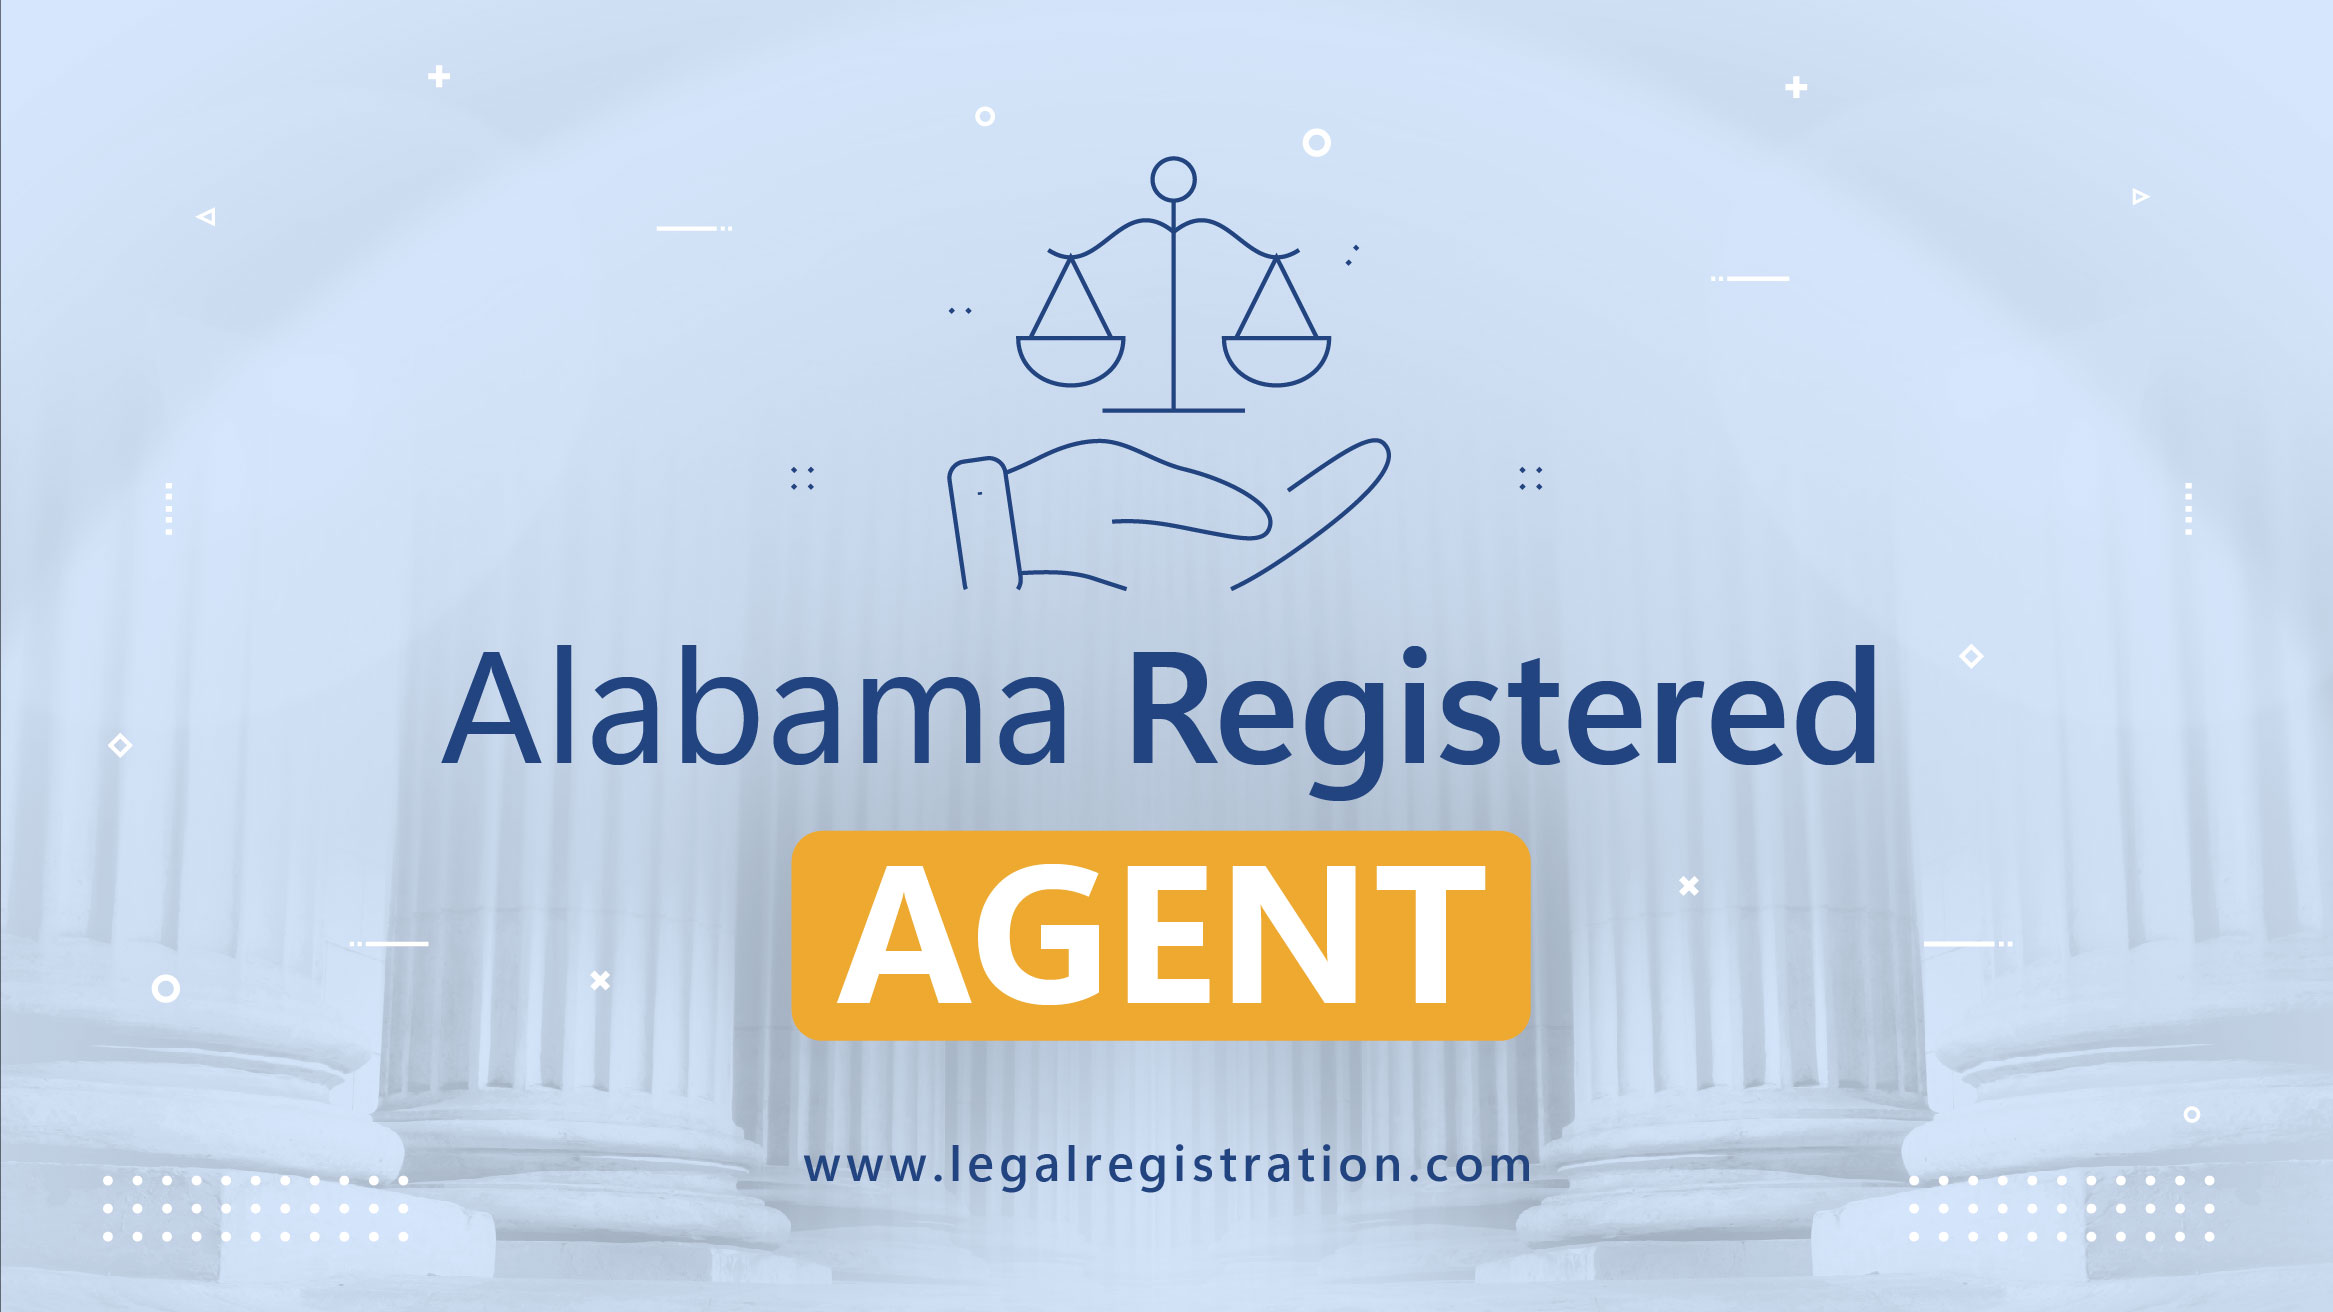 Alabama registered agent